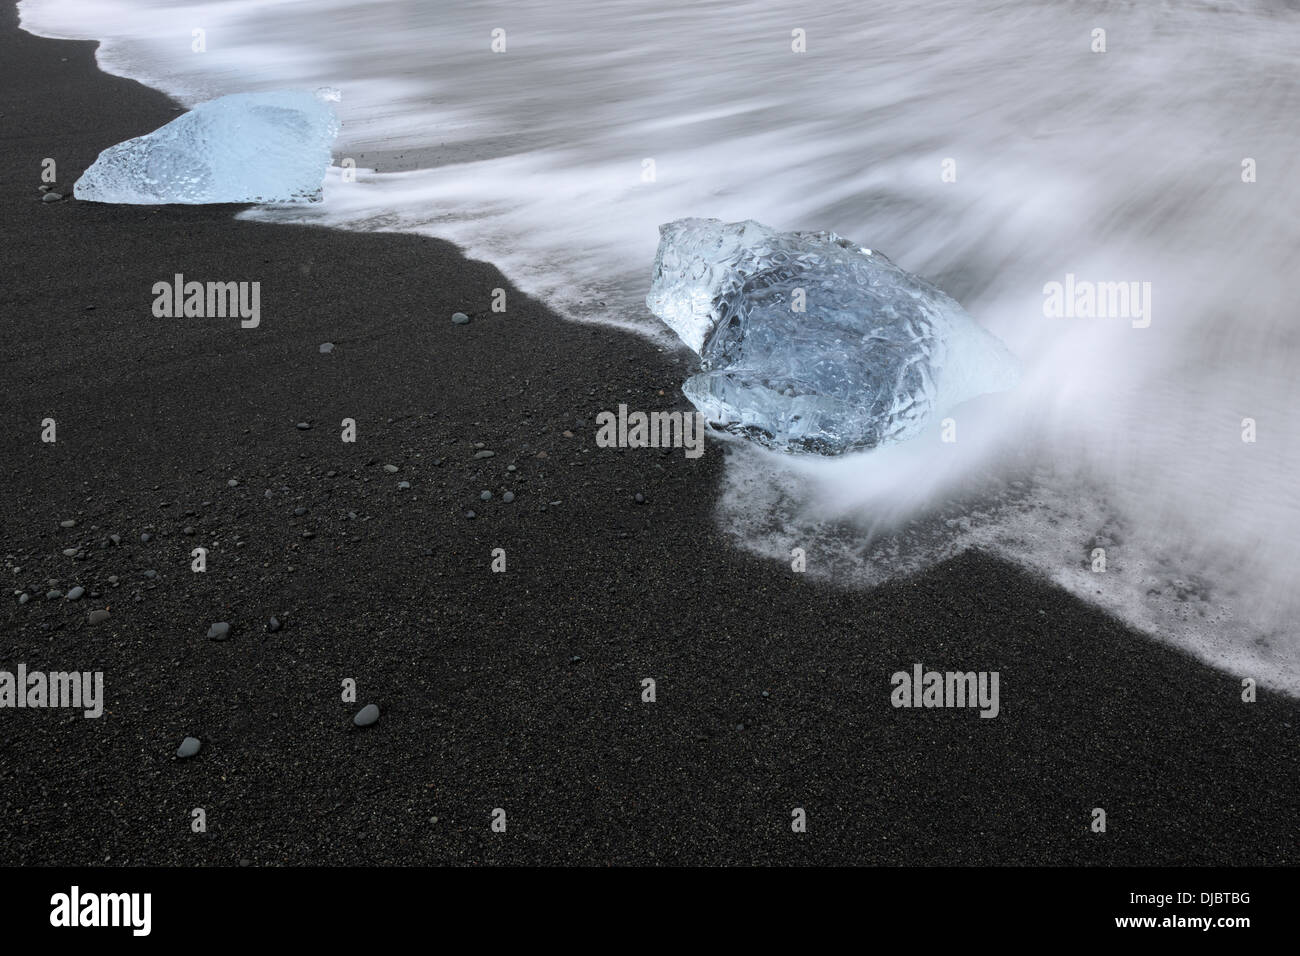 Bloc de glace sur une plage avec de l'eau et des pierres de lave flottant au-dessus. Banque D'Images